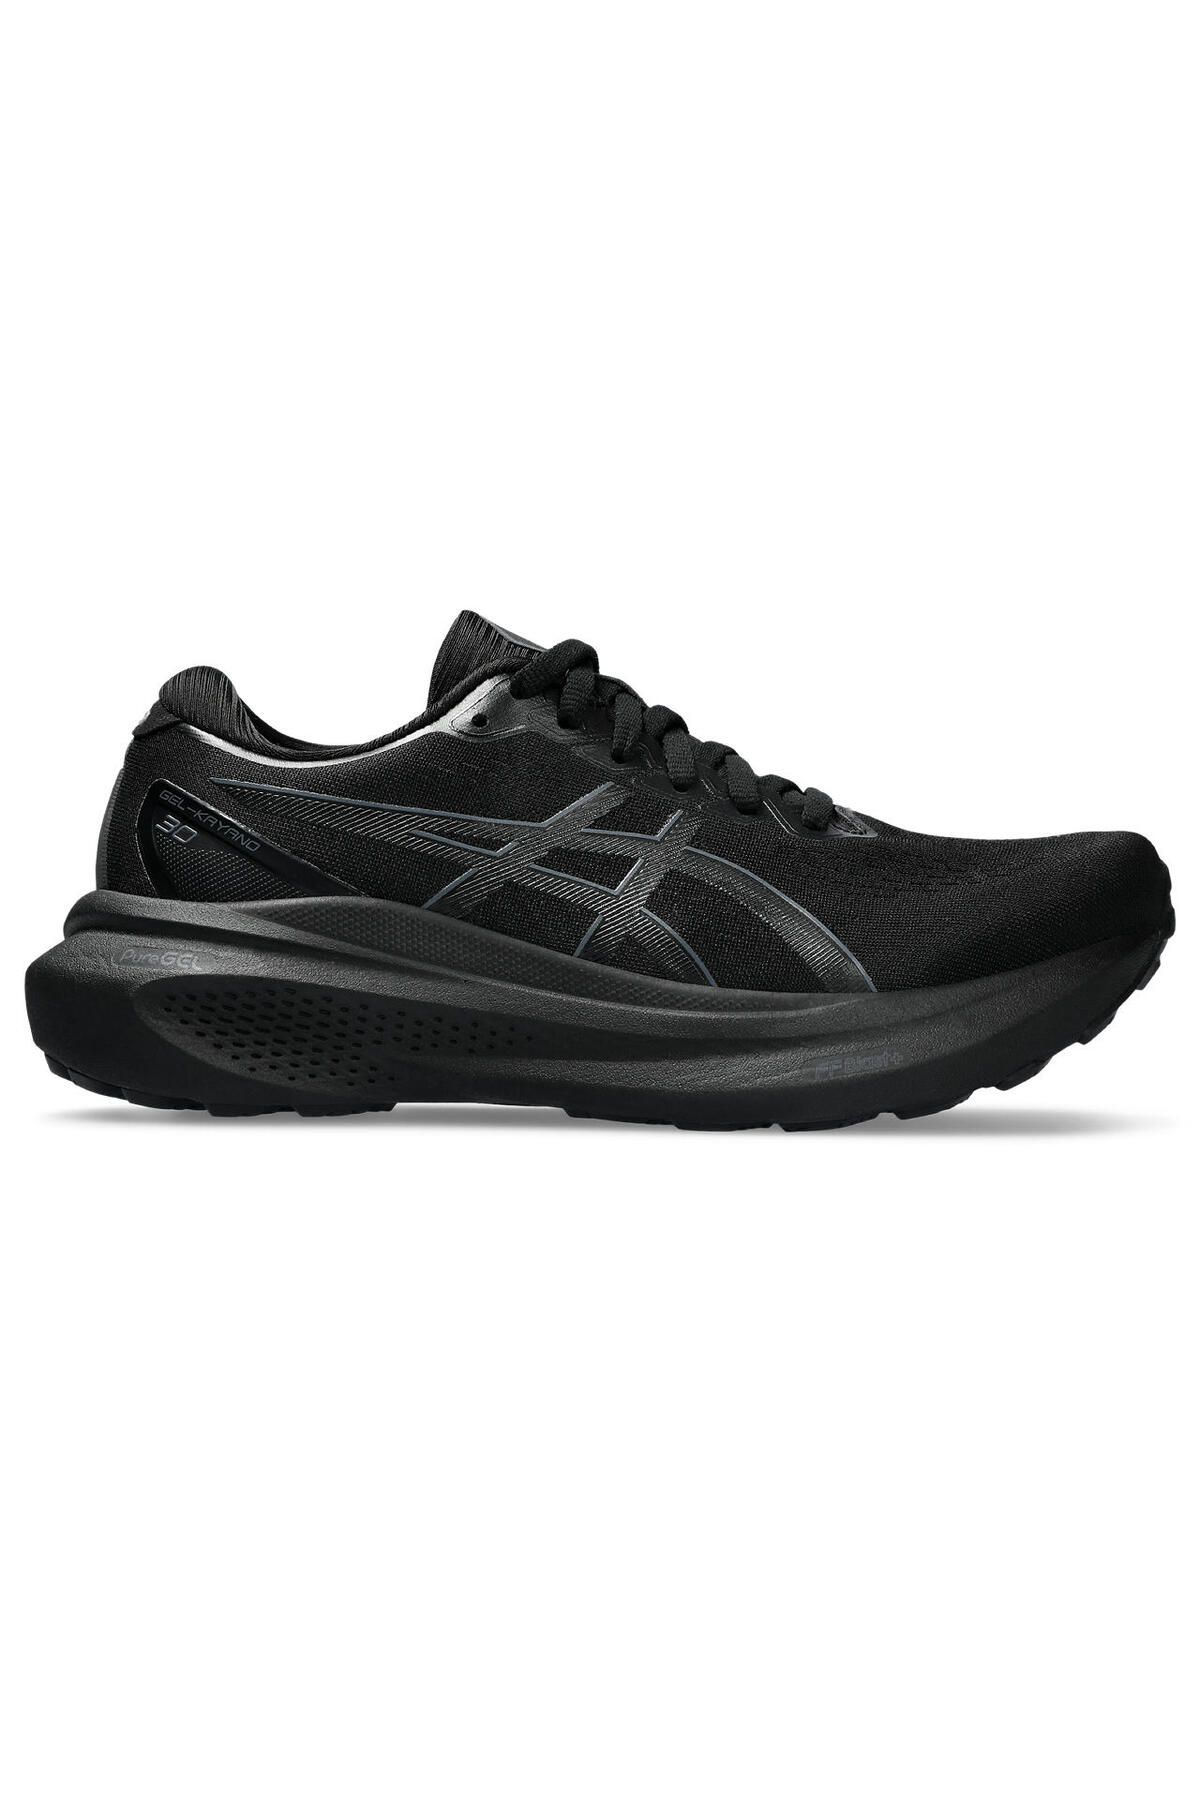 Asics Gel-Kayano 30 Kadın Siyah Koşu Ayakkabısı 1012B357-001